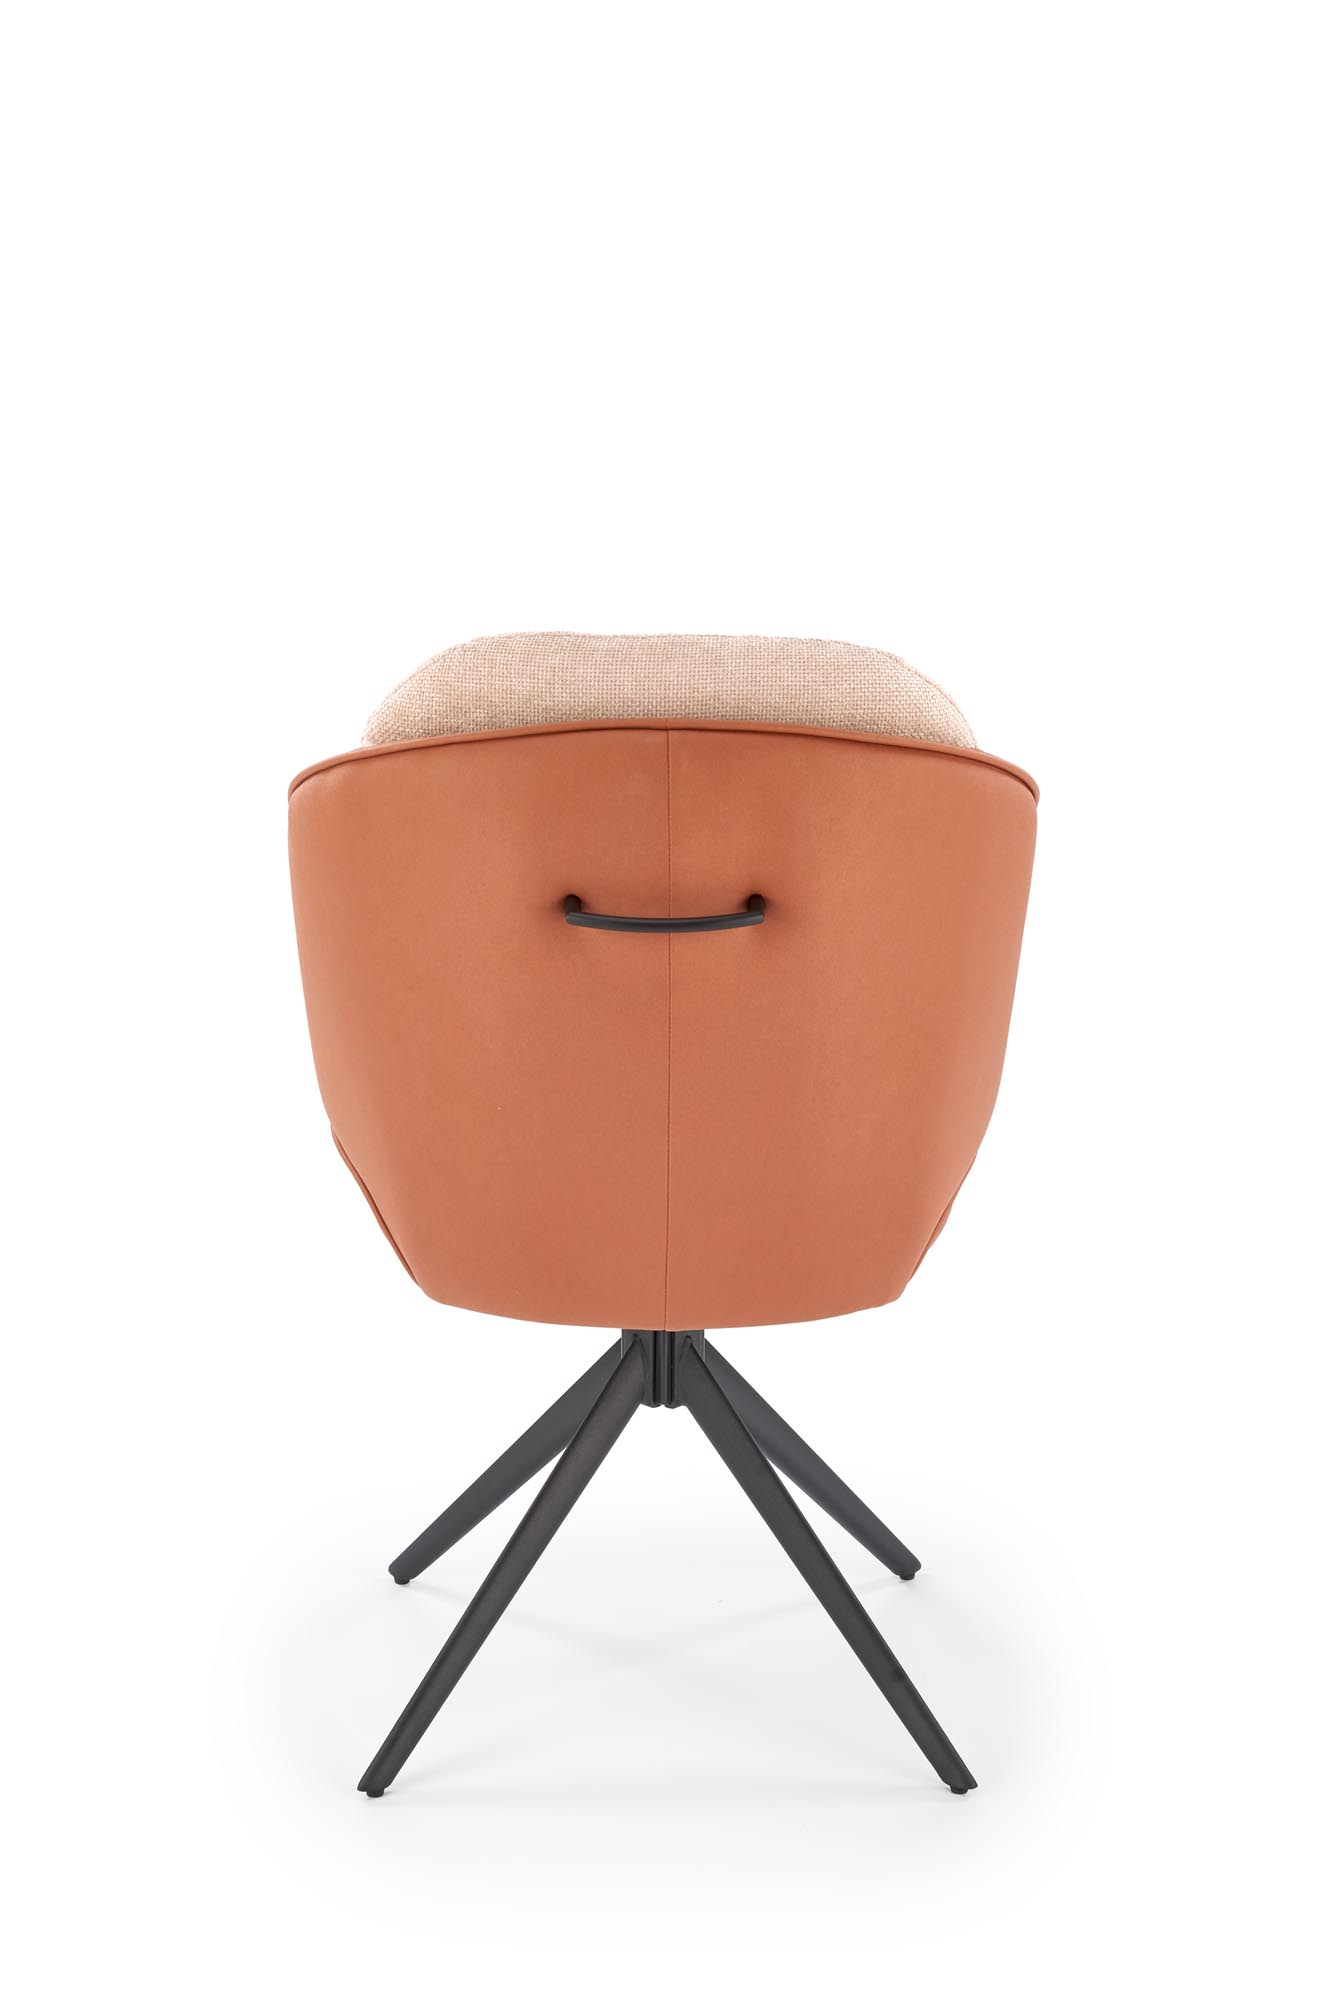 Krzesło tapicerowane K554 obracane - brązowy / beżowy Krzesło tapicerowane K554 obracane - brązowy / beżowy